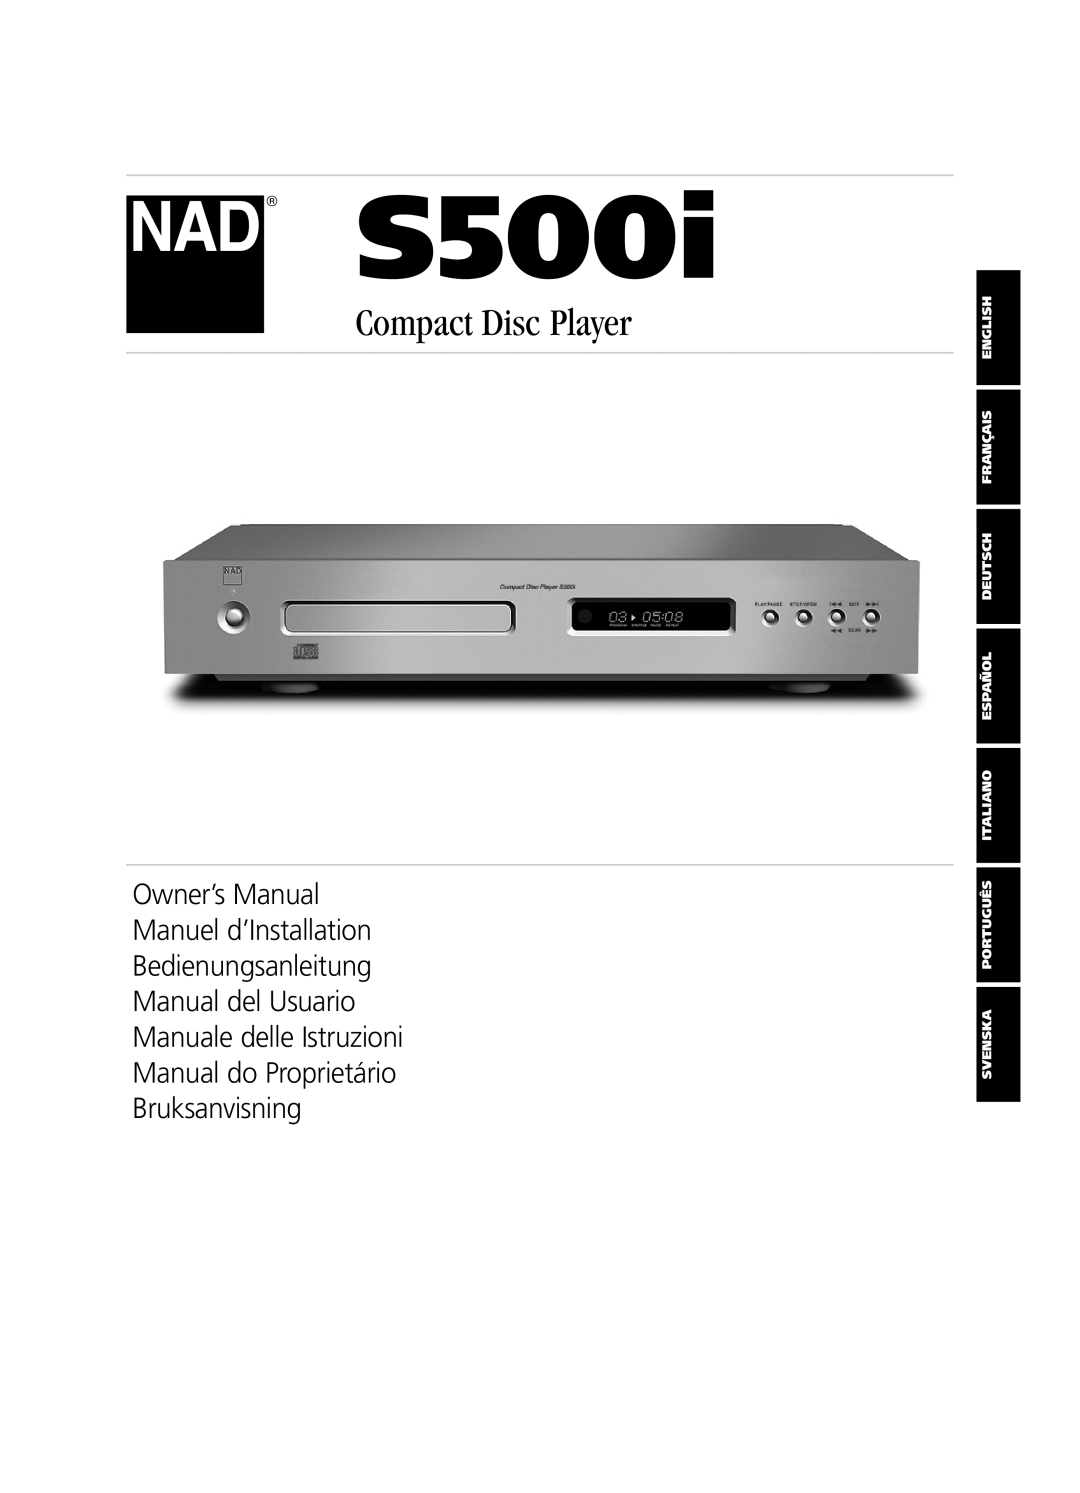 NAD S500i owner manual Compact Disc Player, Bedienungsanleitung Manual del Usuario, Bruksanvisning 